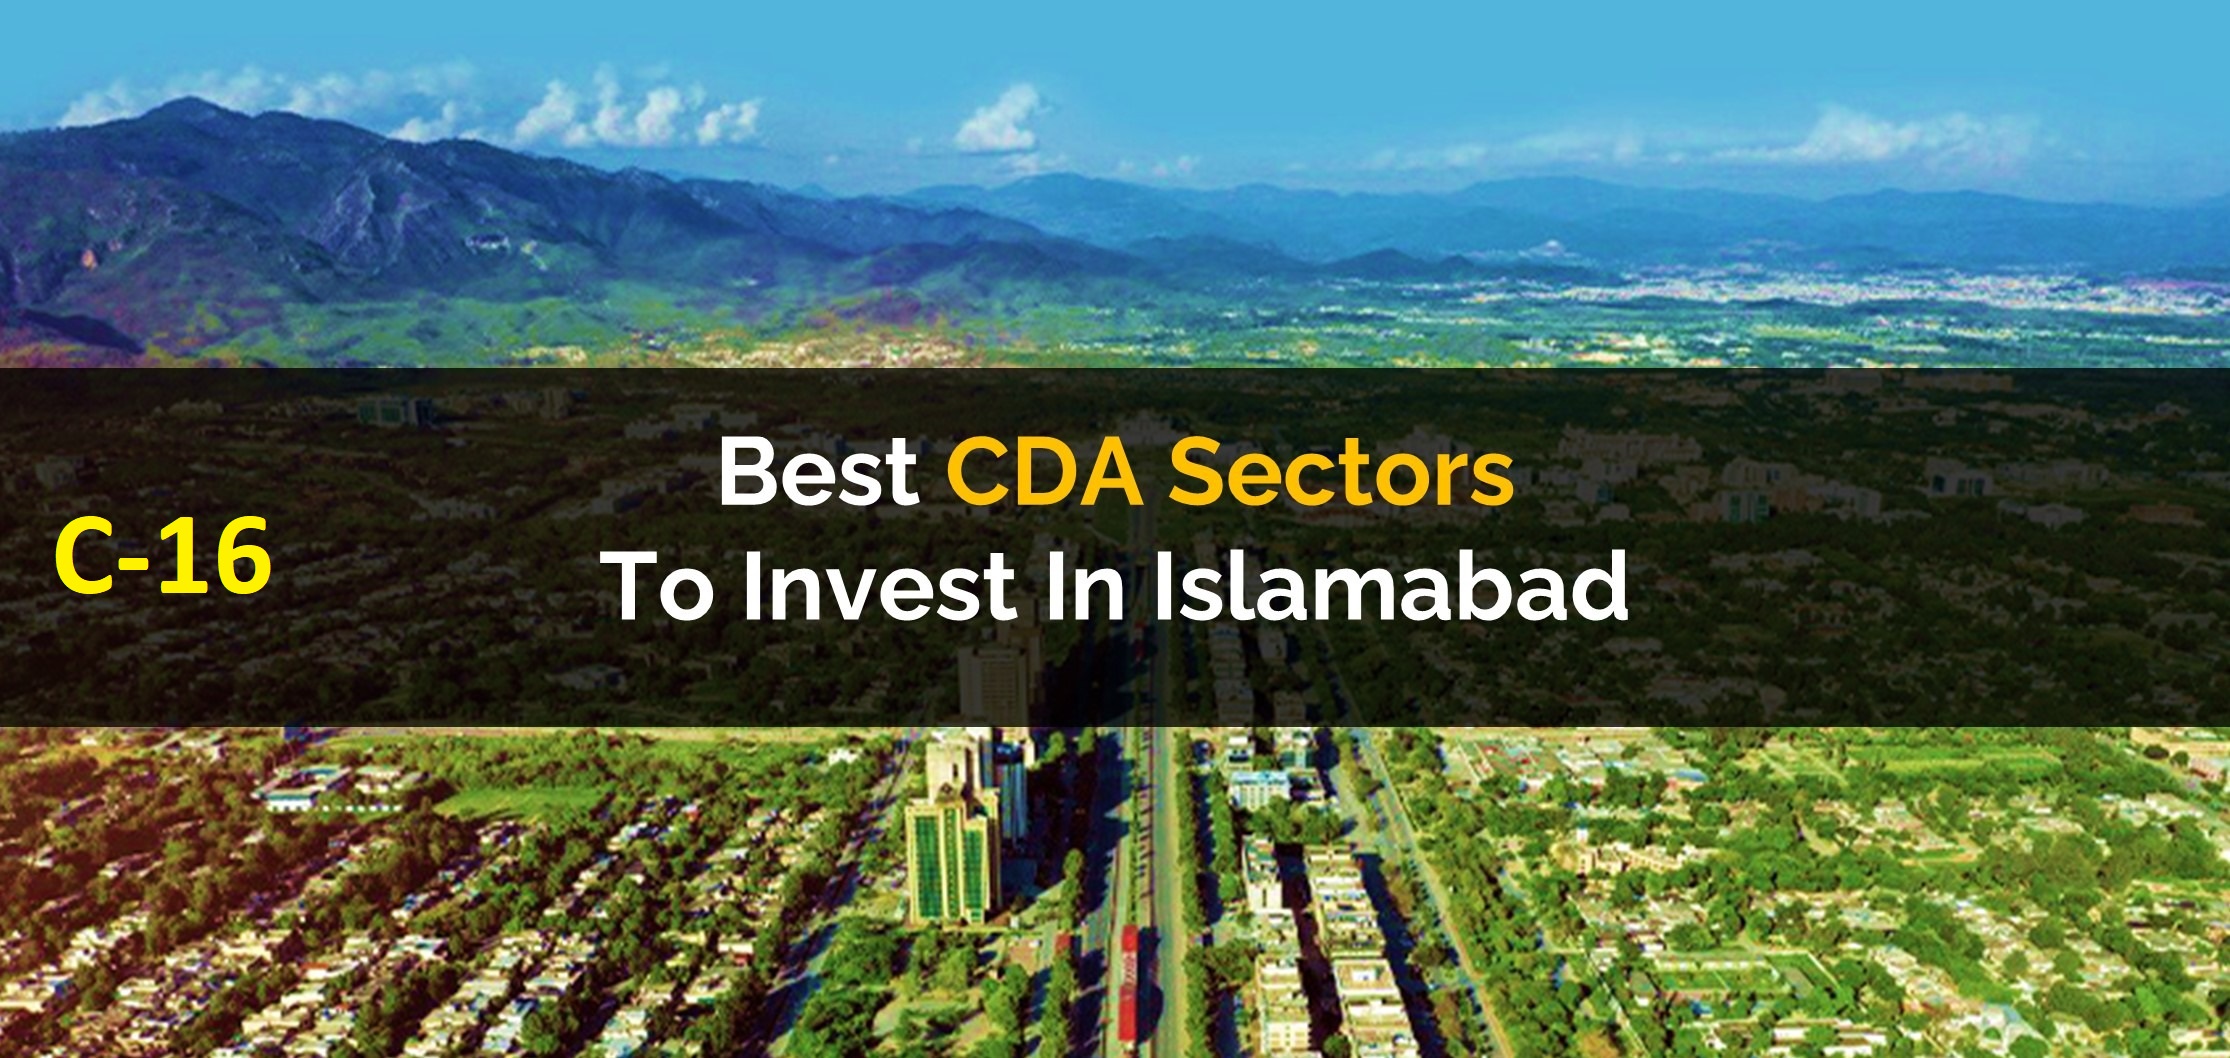 CDA allocates 10 Billion for C-16 Sector development.